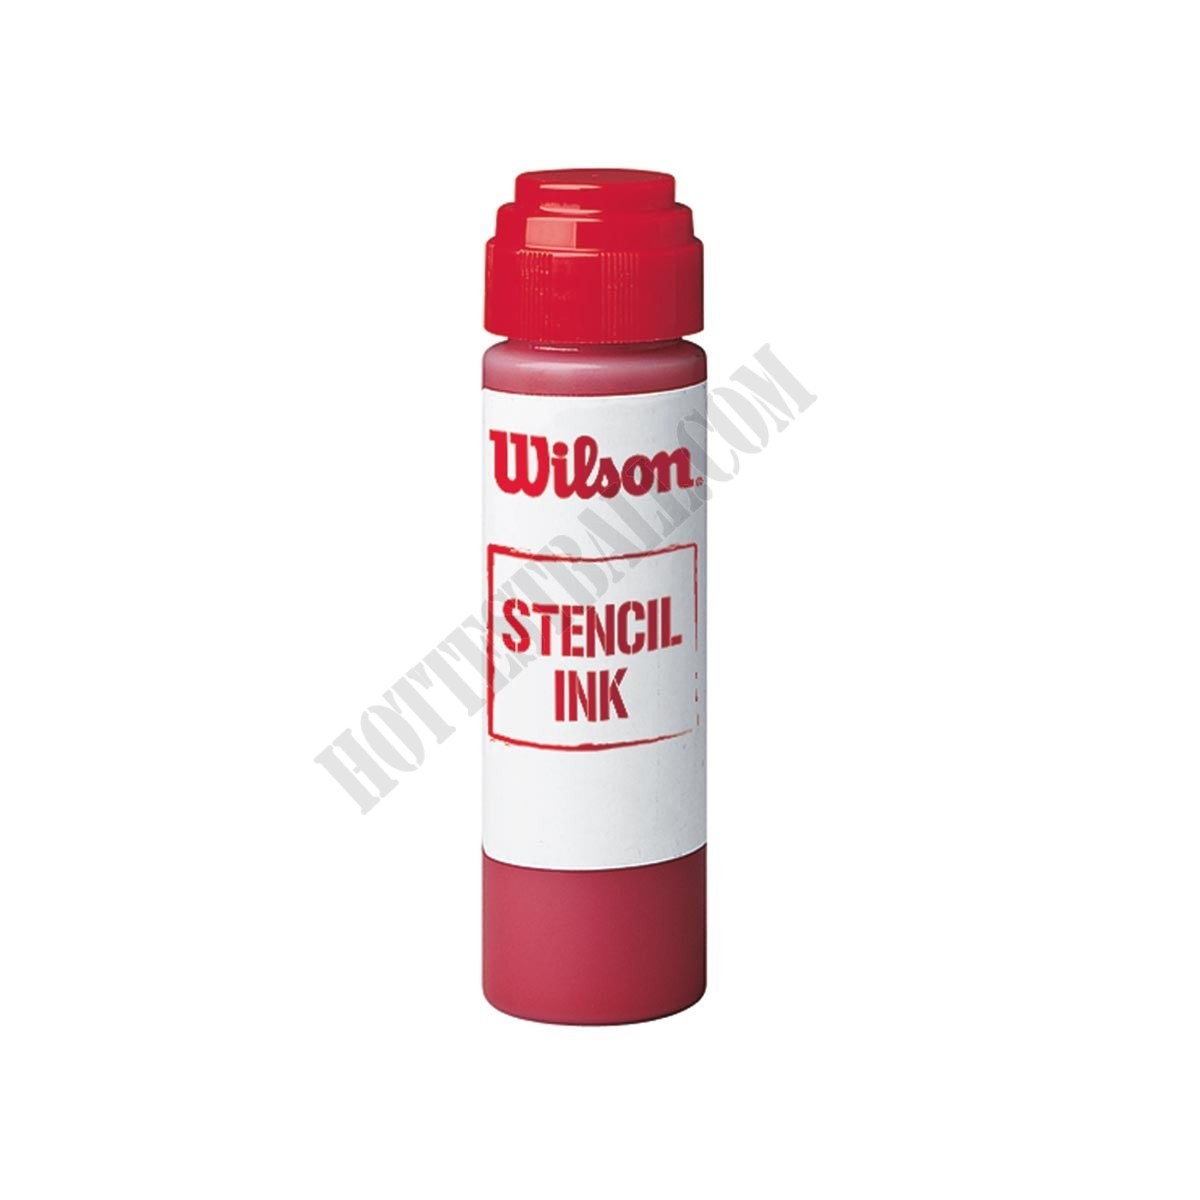 Stencil Ink - Wilson Discount Store - Stencil Ink - Wilson Discount Store